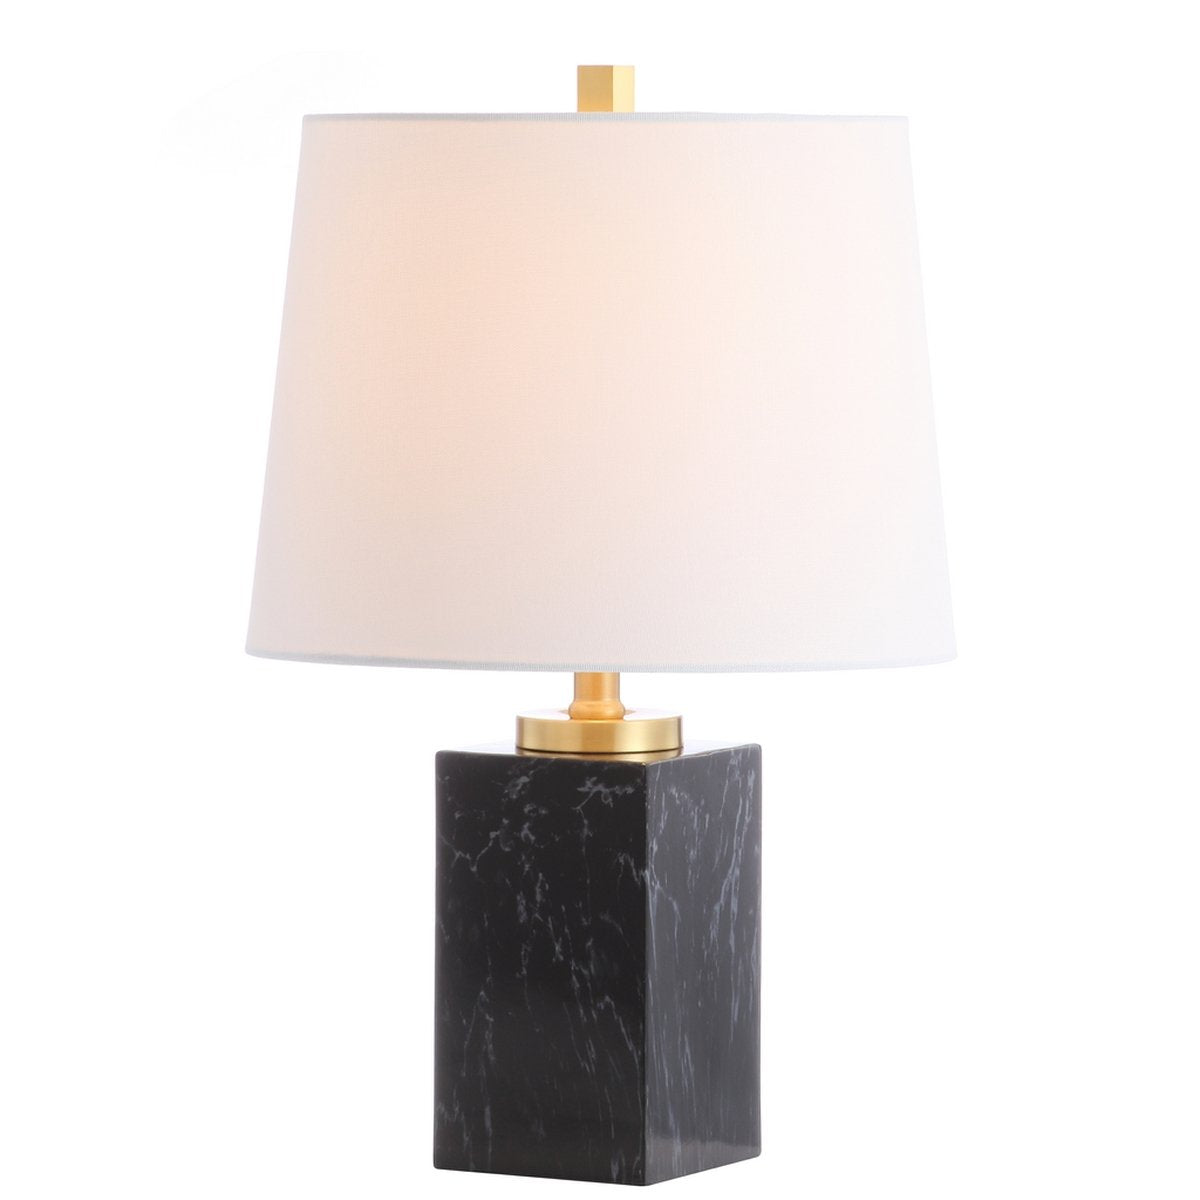 Safavieh Judson Table Lamp - Black Marble Finish | Table Lamps | Modishstore - 3